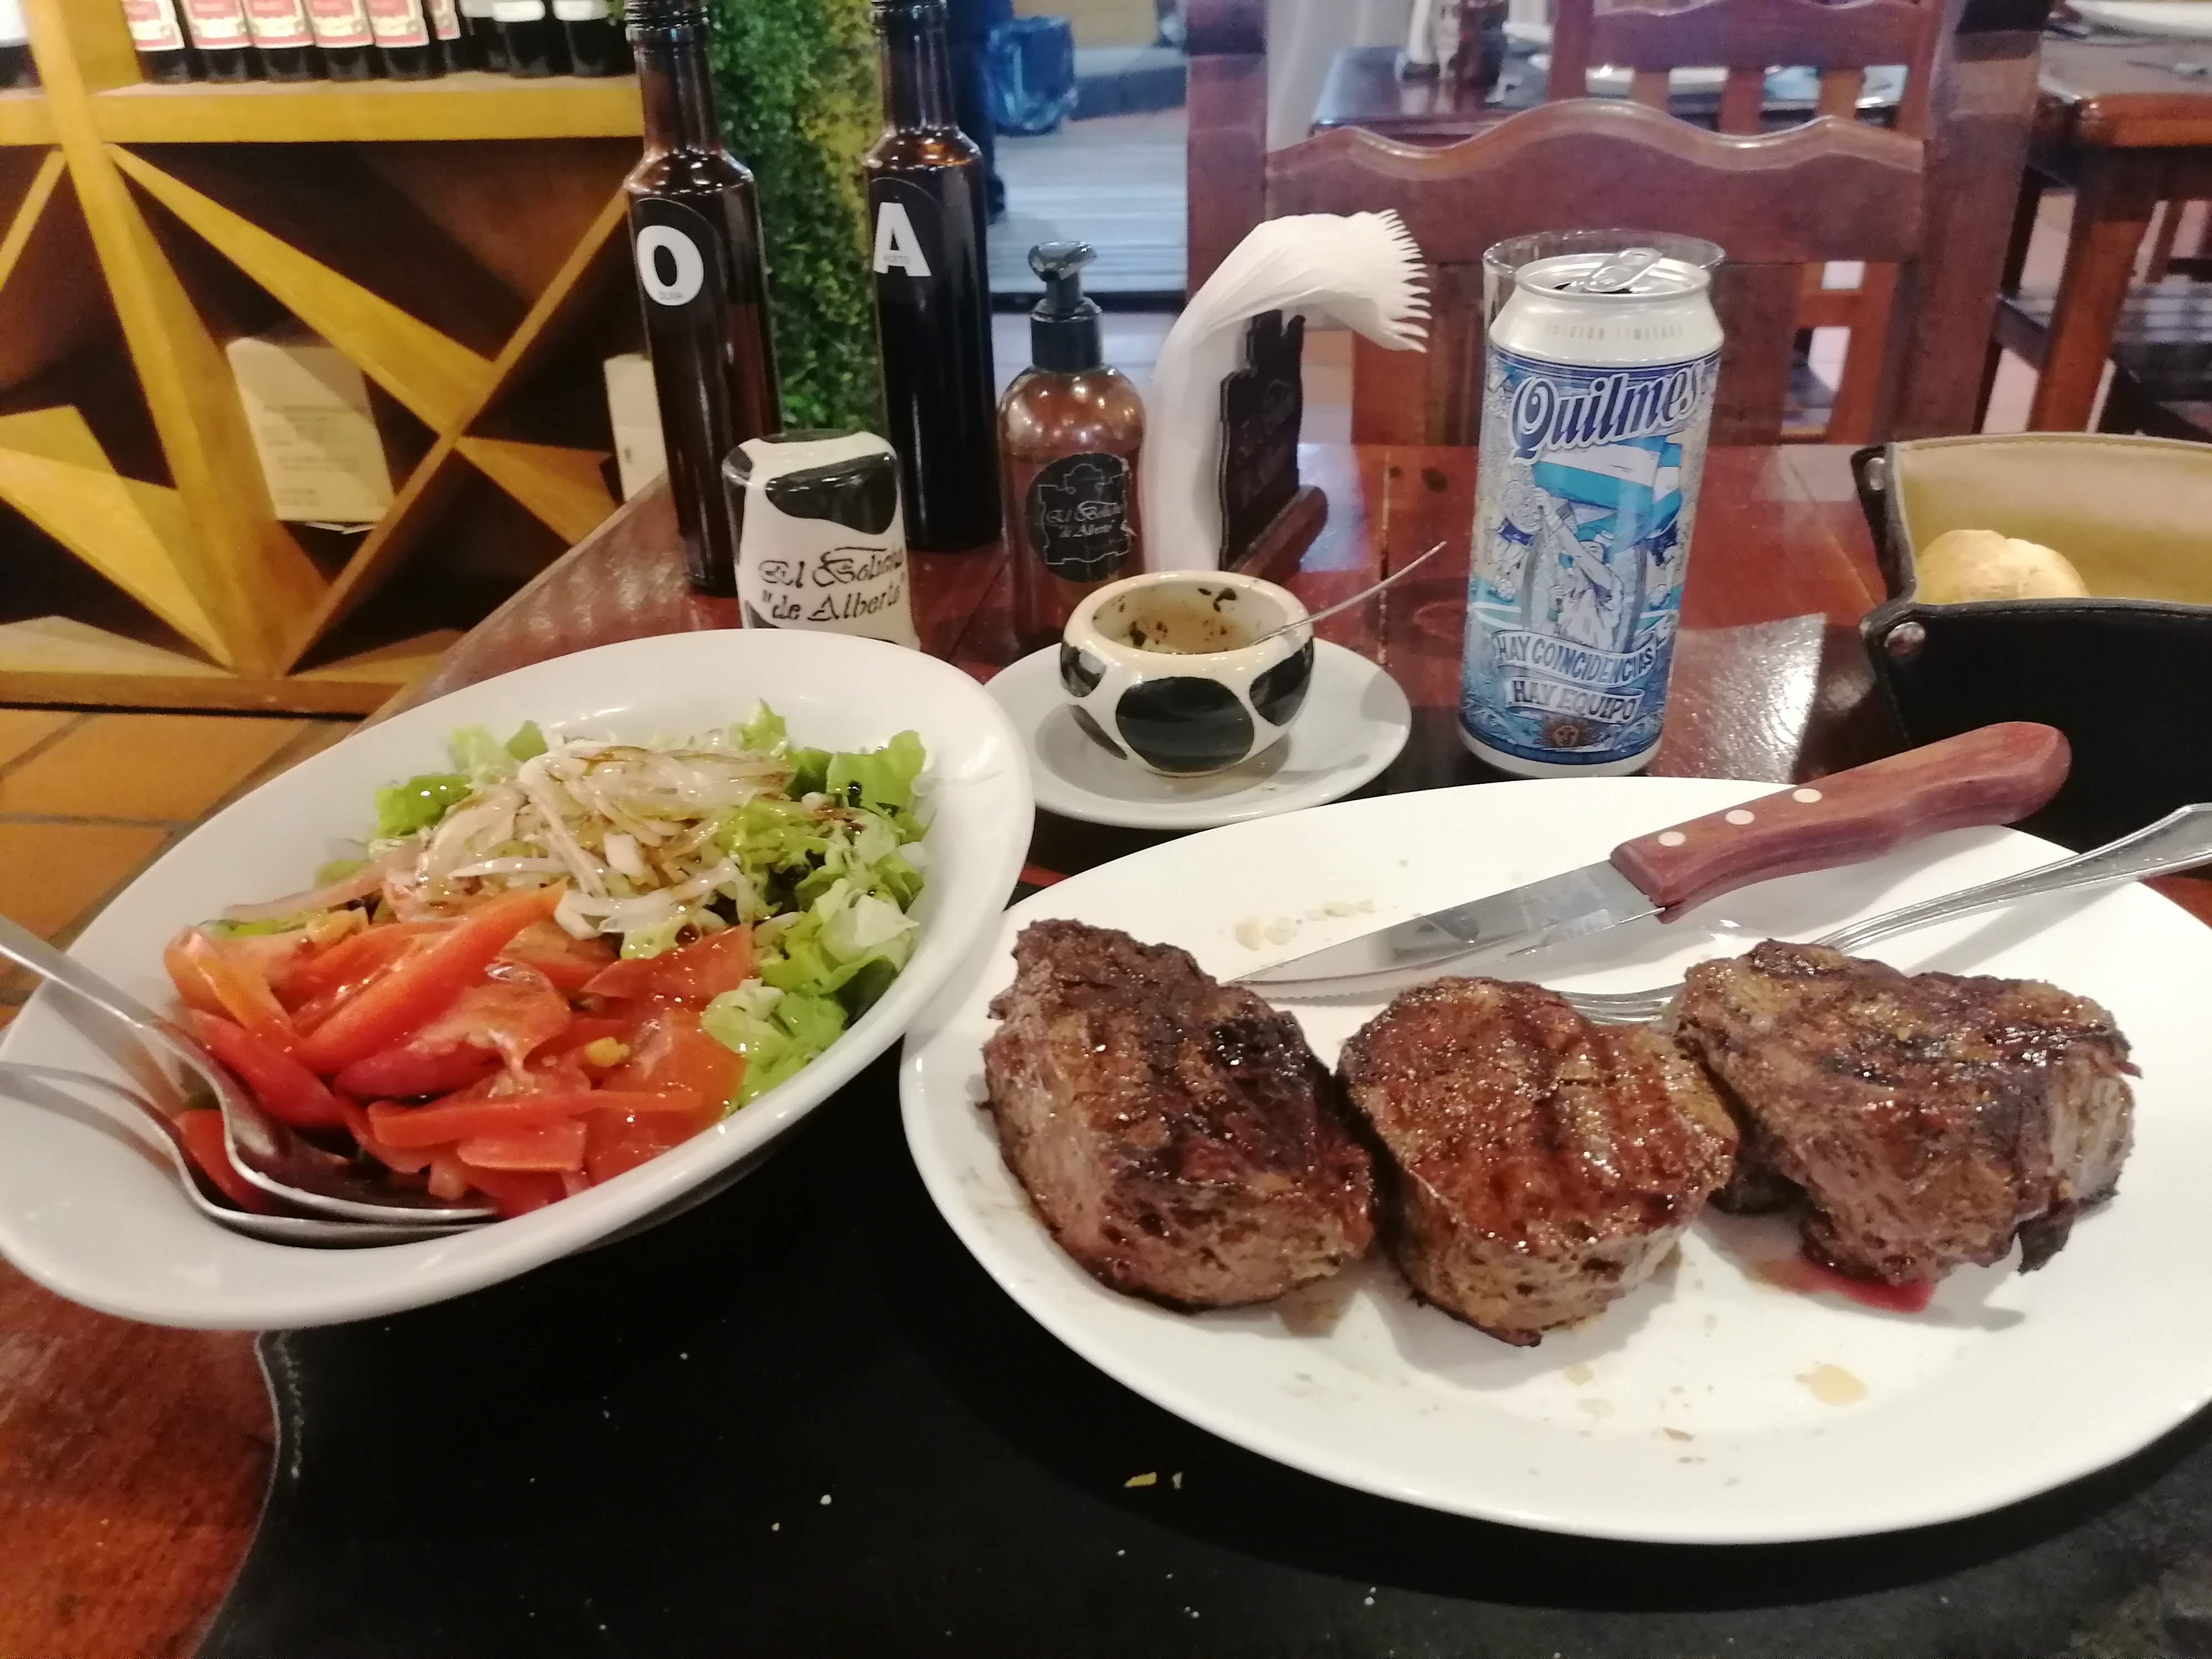 Argentina steak